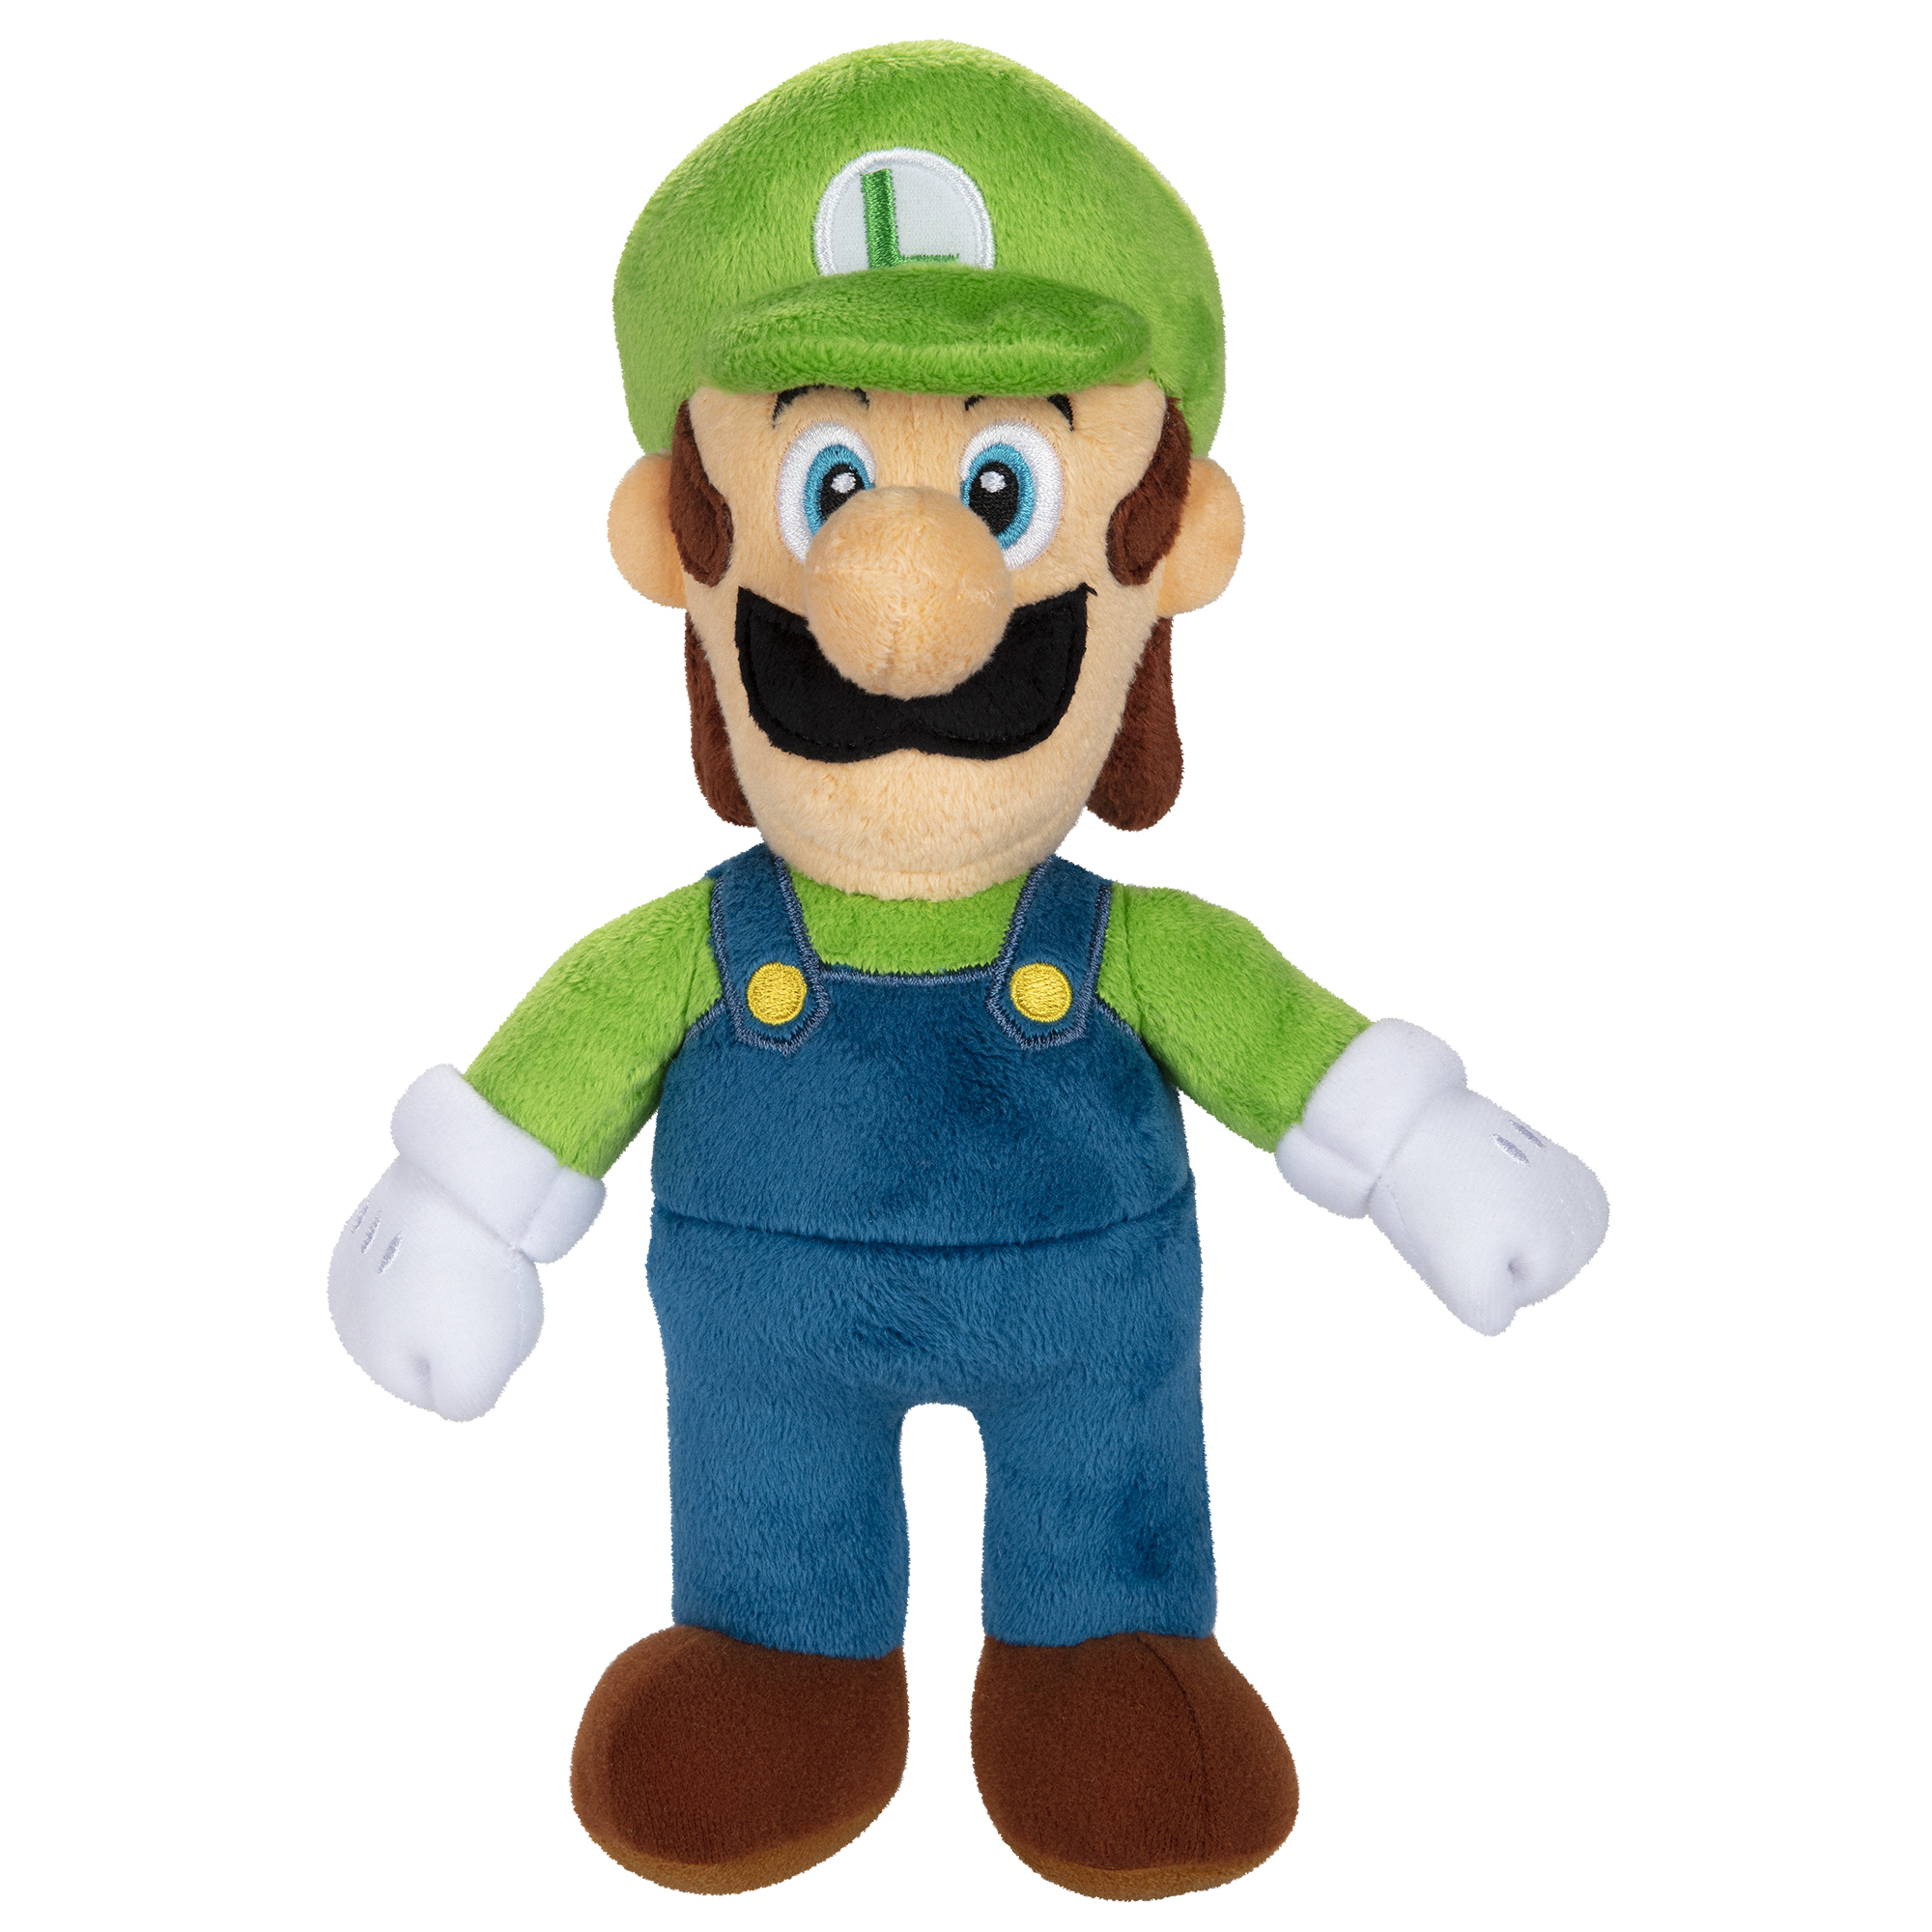 Super Mario Luigi Plush